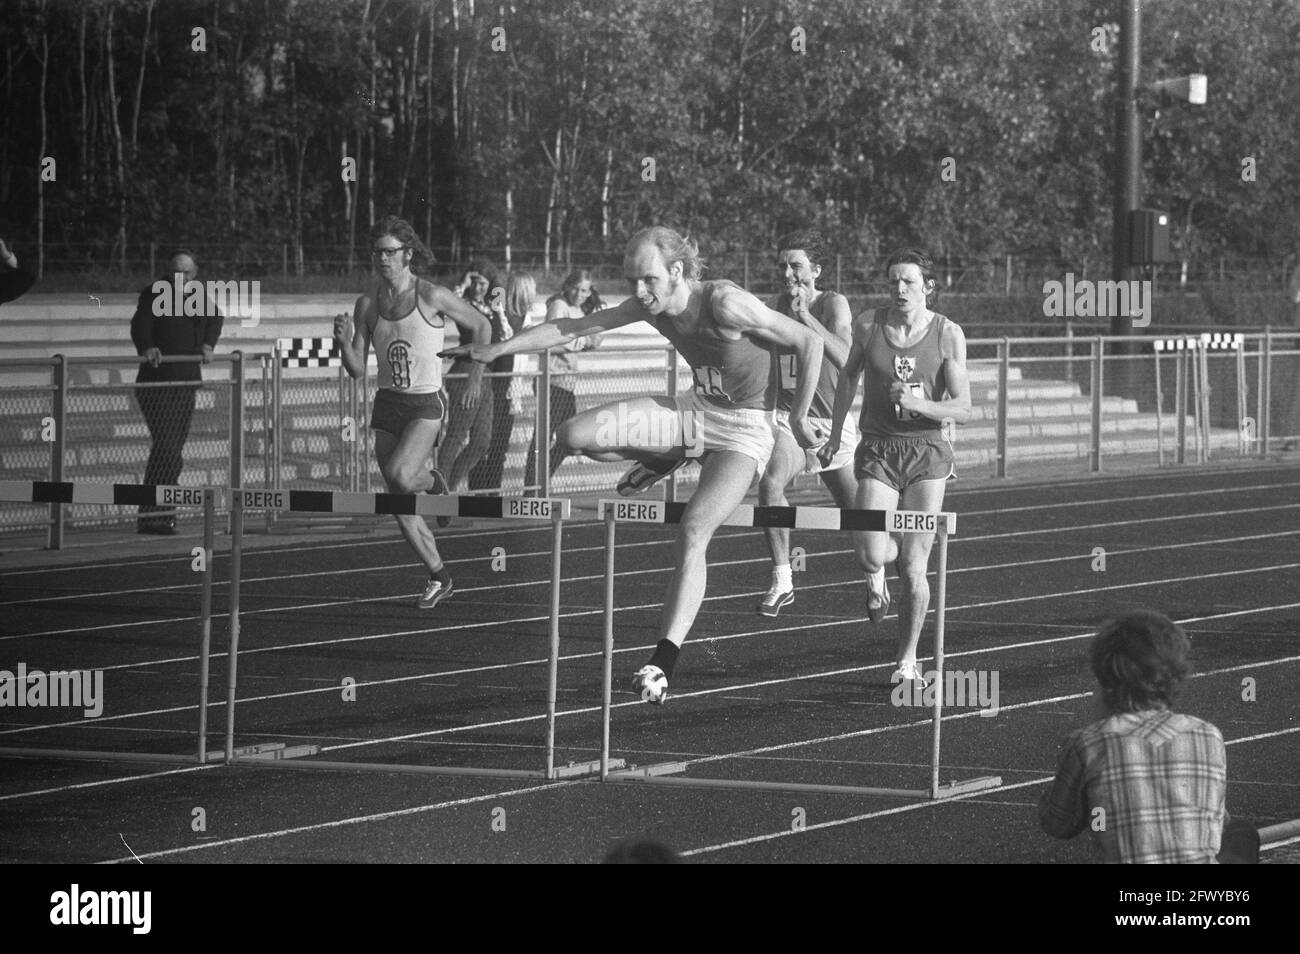 Athlétisme pays-Bas contre Irlande à Drachten, 400 mètres haies, J. Struyk (devant, numéro 56), 12 juillet 1972, athlétisme, Pays-Bas Banque D'Images